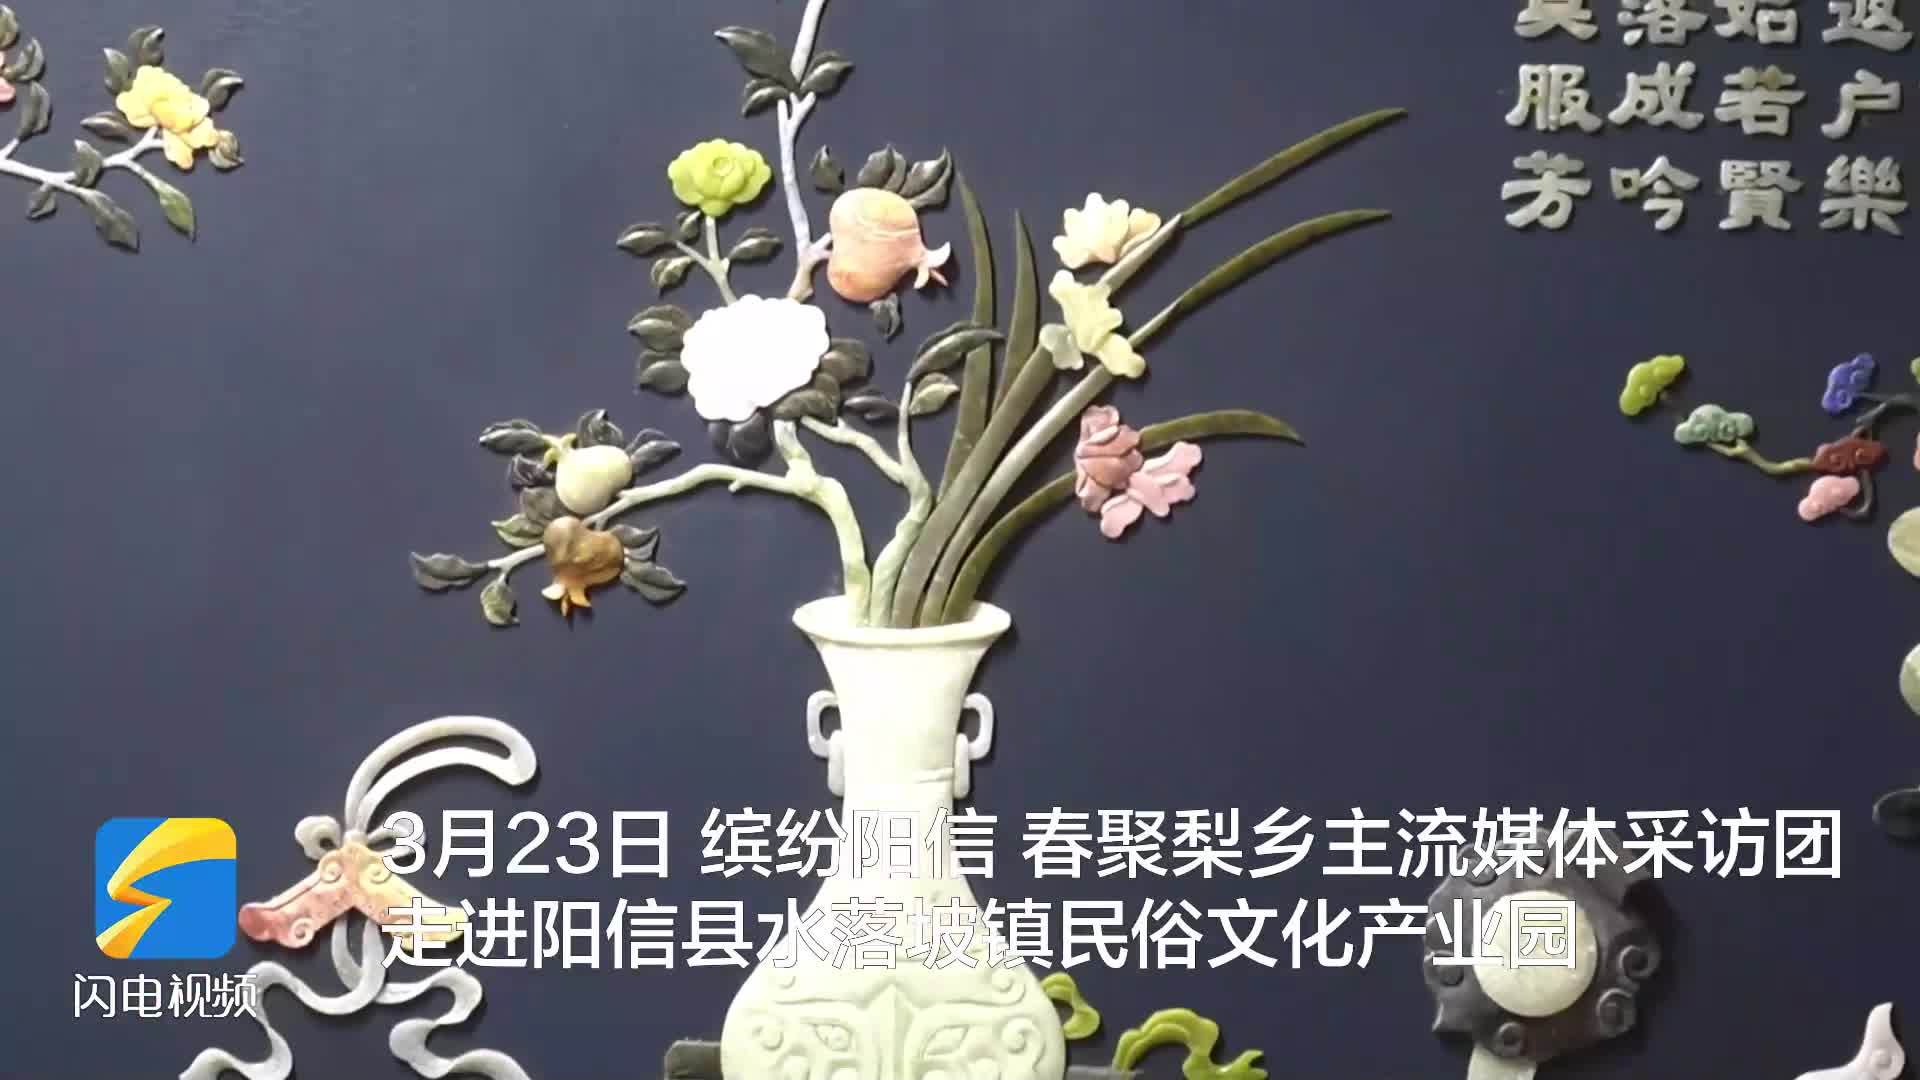 以民俗文化为载体 阳信县水落坡镇年销售古典家具古玩60余亿元